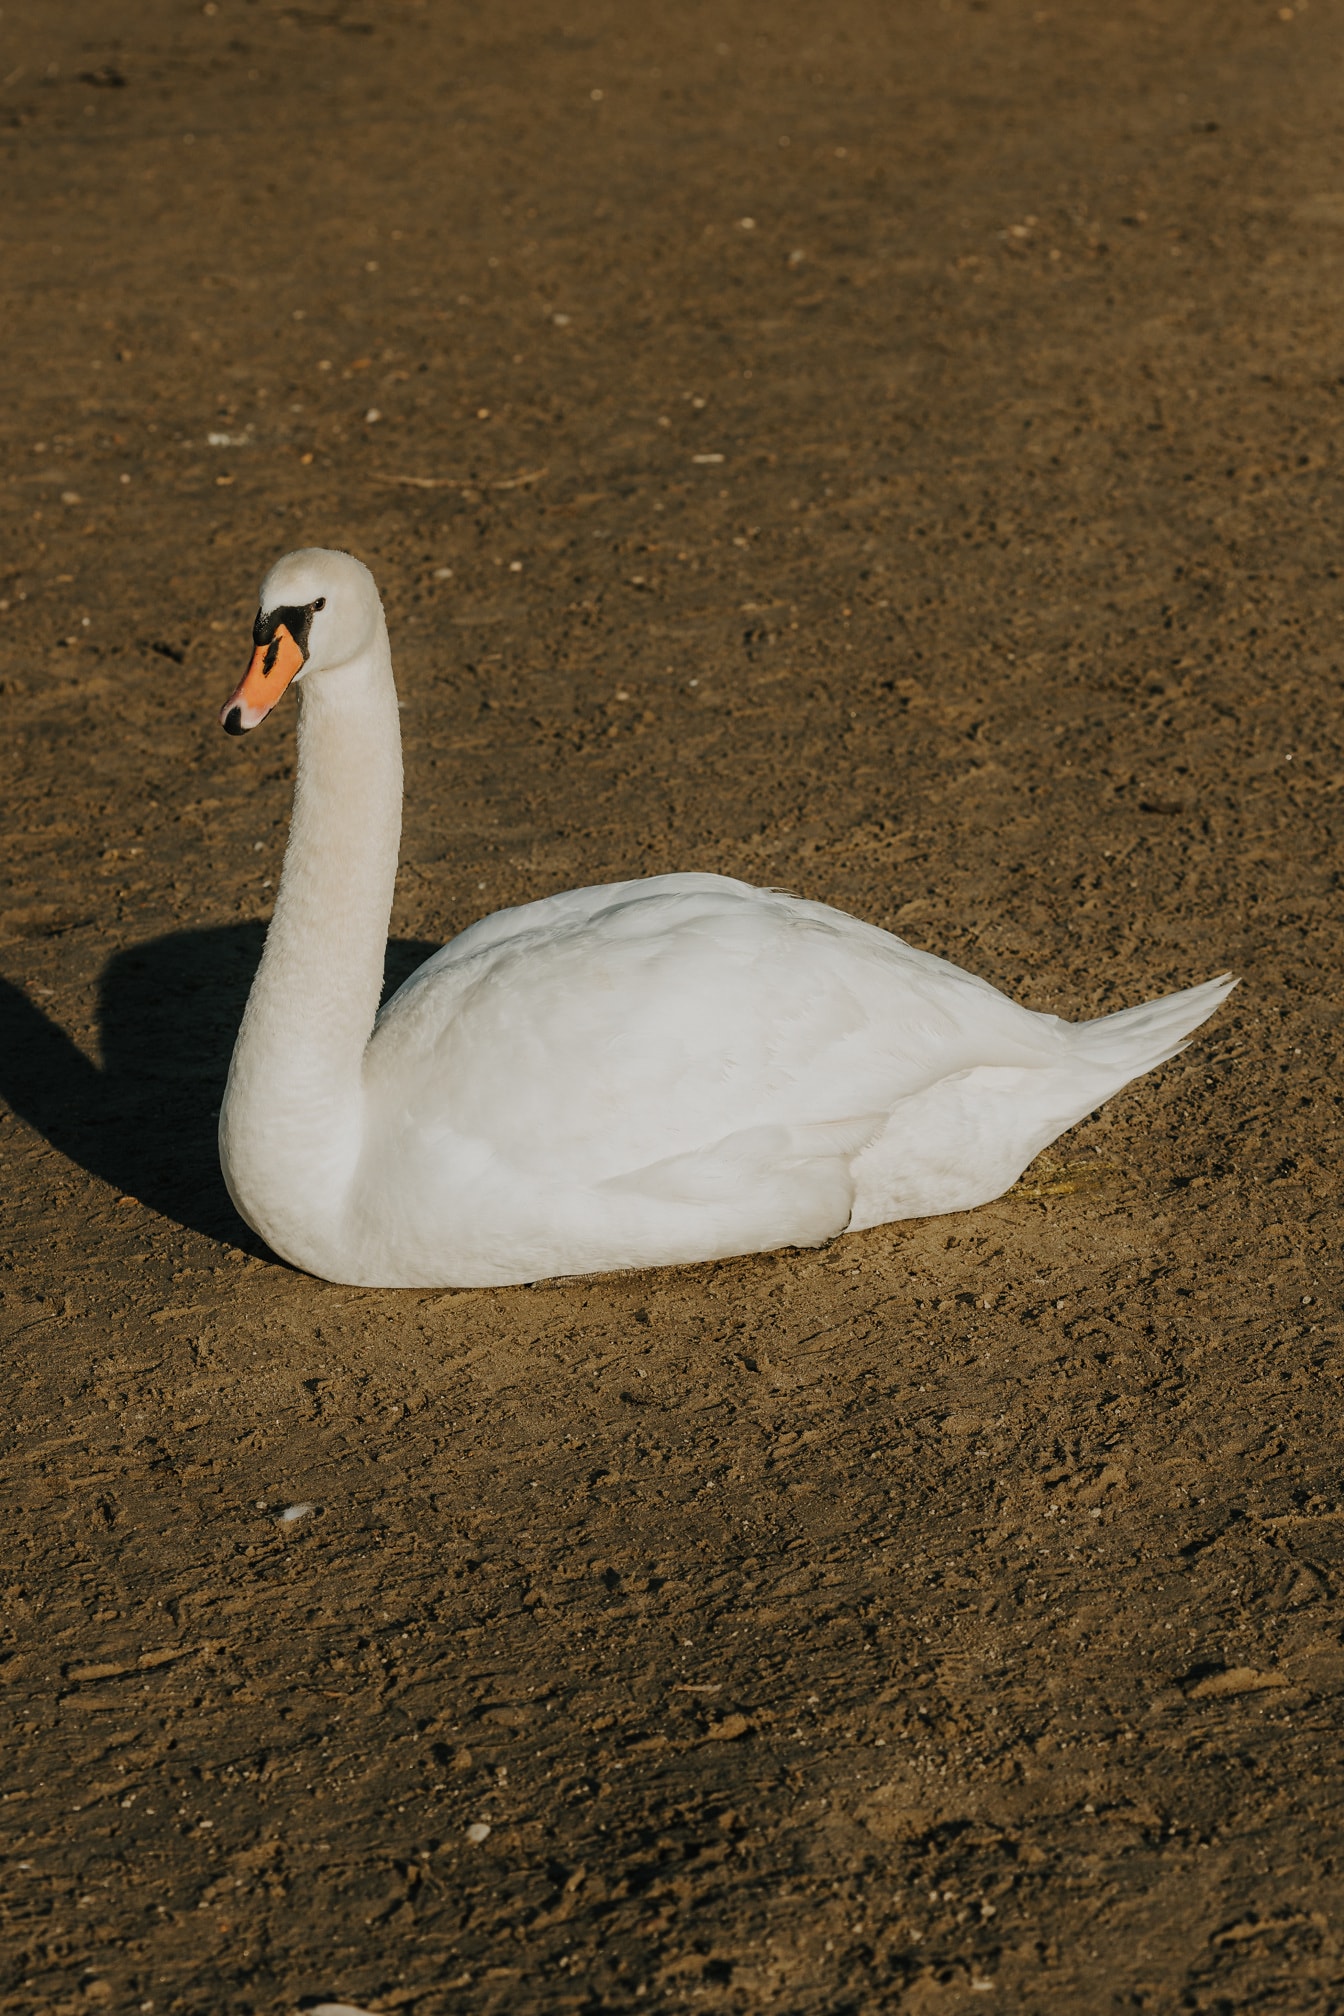 Cisne blanco disfrutando tomando el sol en la arena mojada